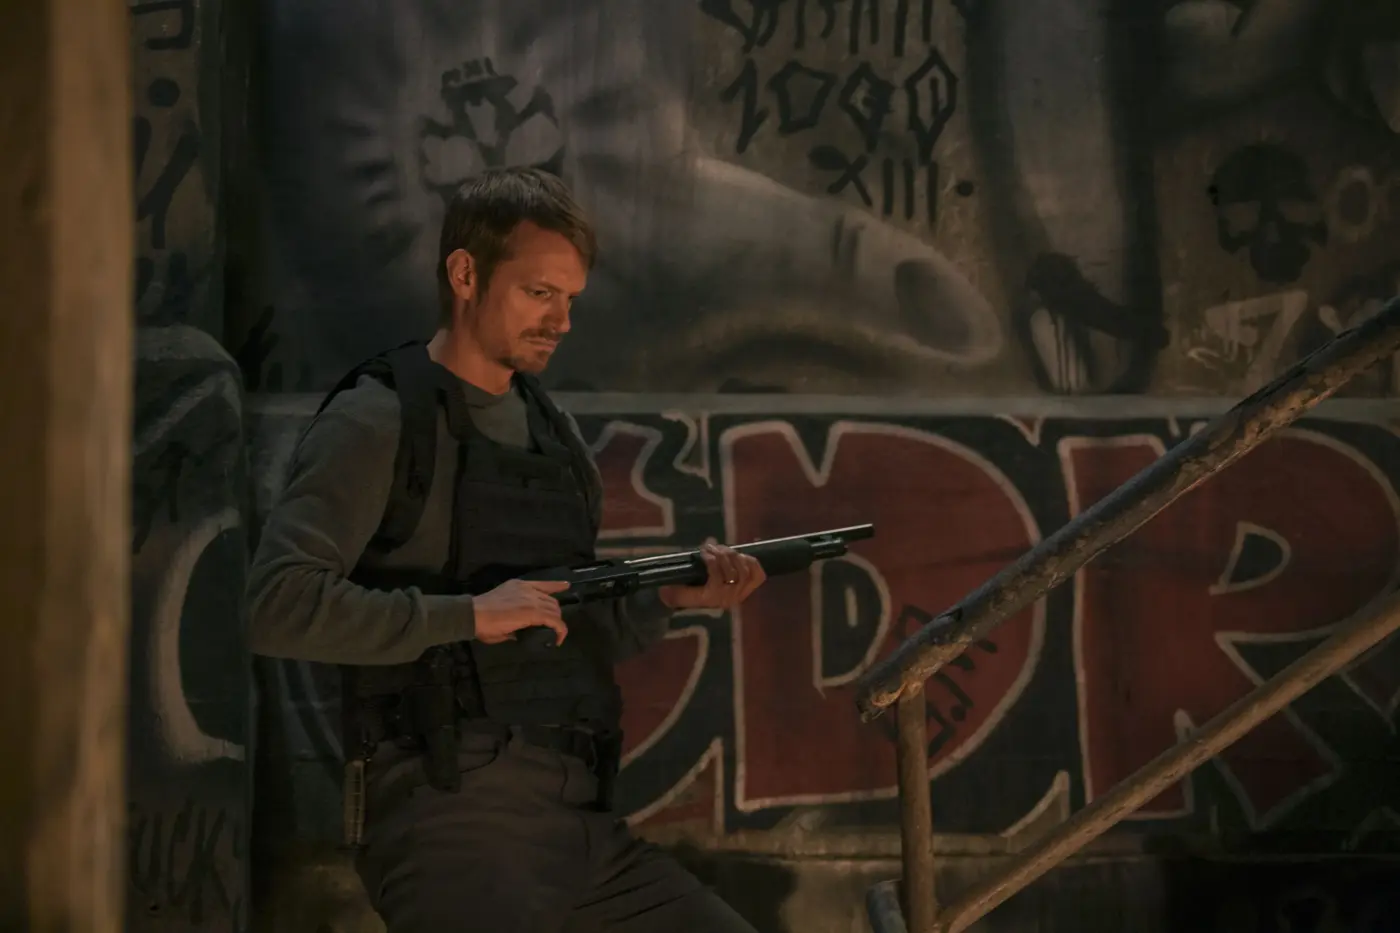 vor einer Wand, die mit Graffiti besprüht ist, steht ein Mann mit Schutzweste und einer Waffe in der Hand